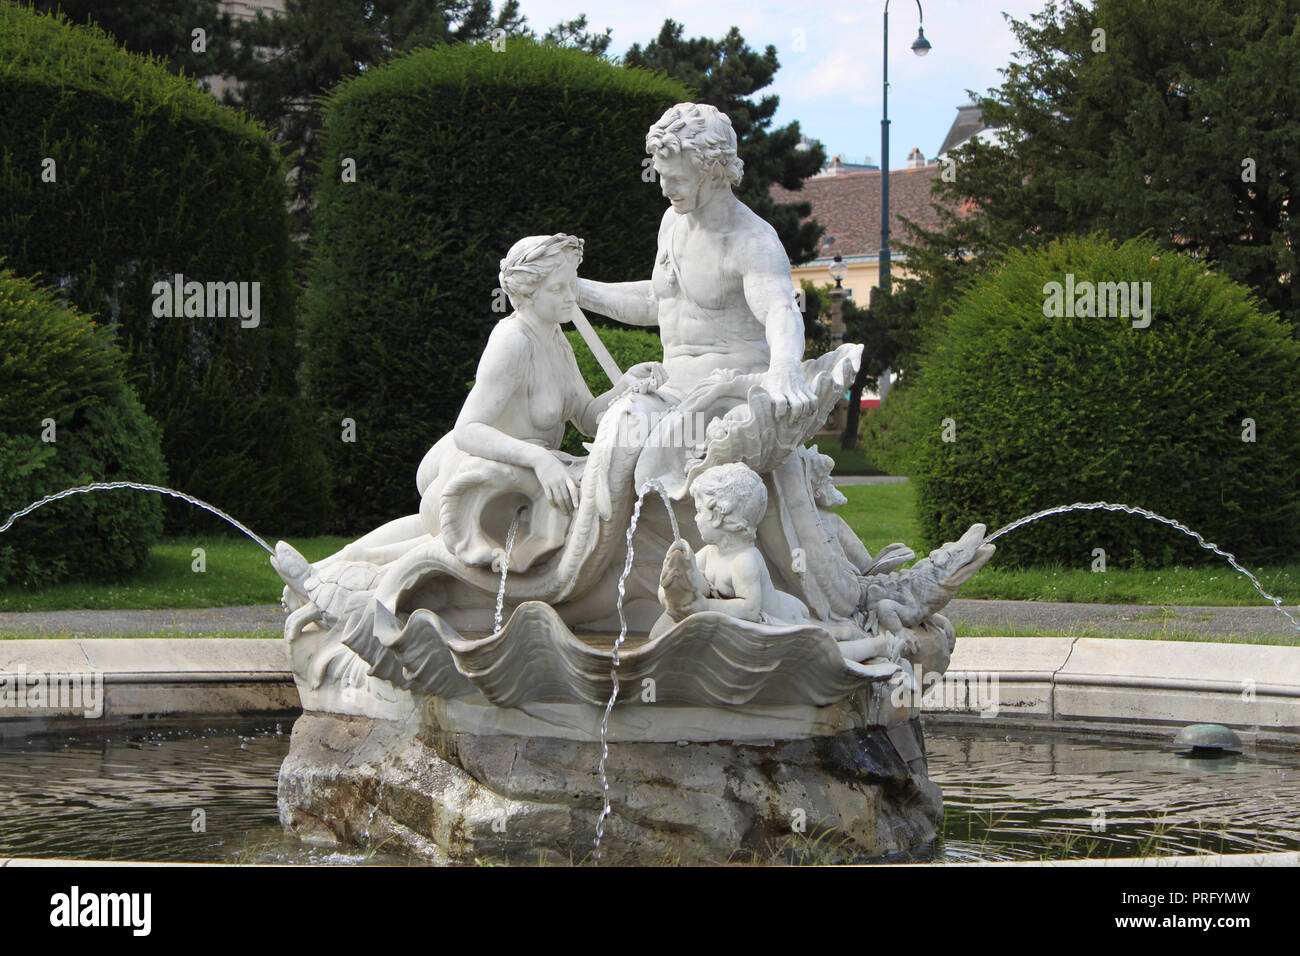 Fontaine du Triton et sirène a voulu en marbre blanc de Maria Theresa Place de la vieille ville de Vienne, Autriche, Europe centrale. Banque D'Images